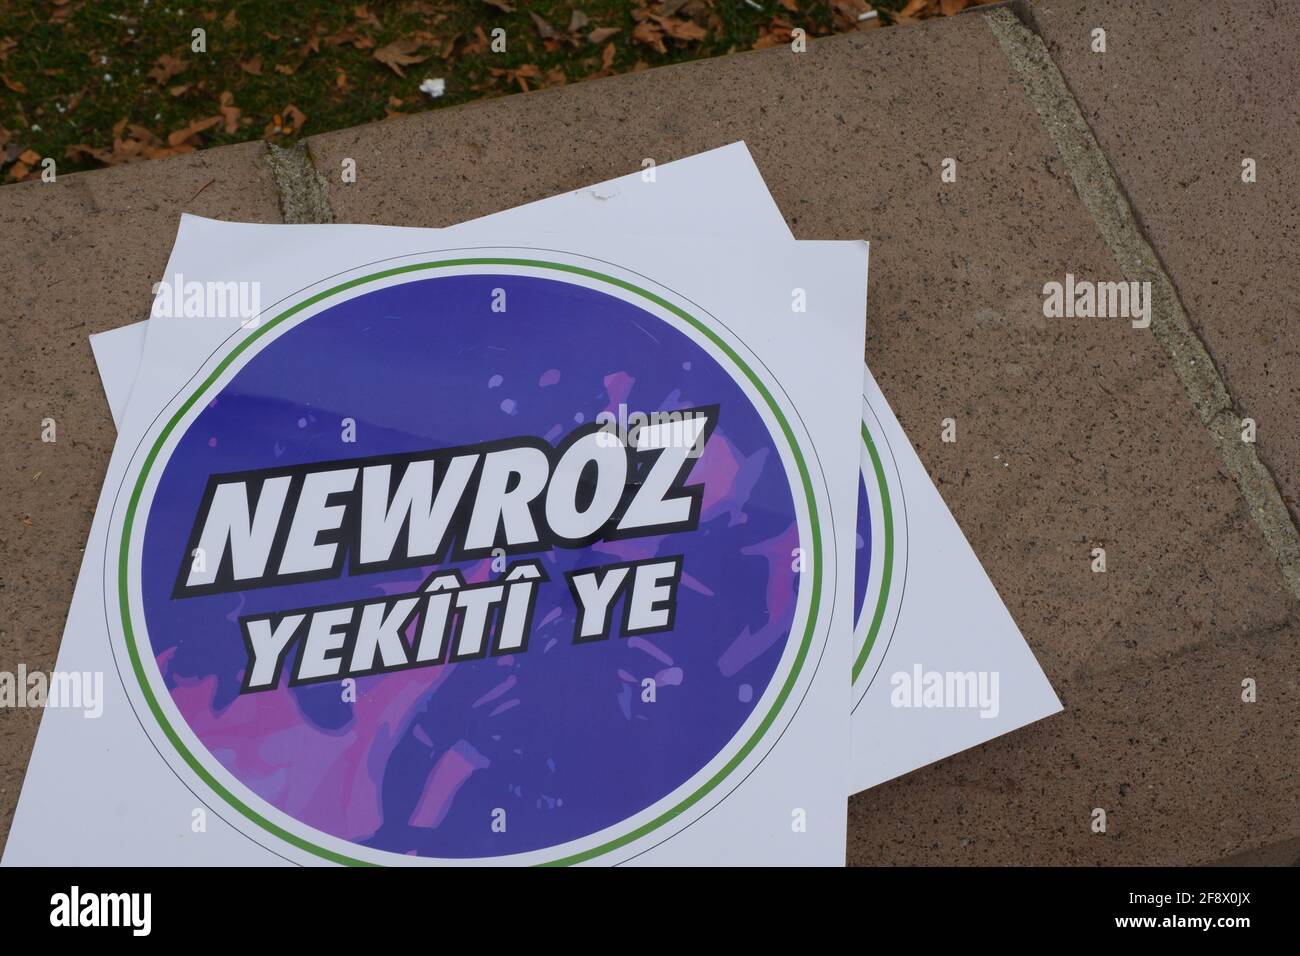 Bannière en langue kurde pour le festival Newroz (semblable à Pâques dans la culture turque) Banque D'Images